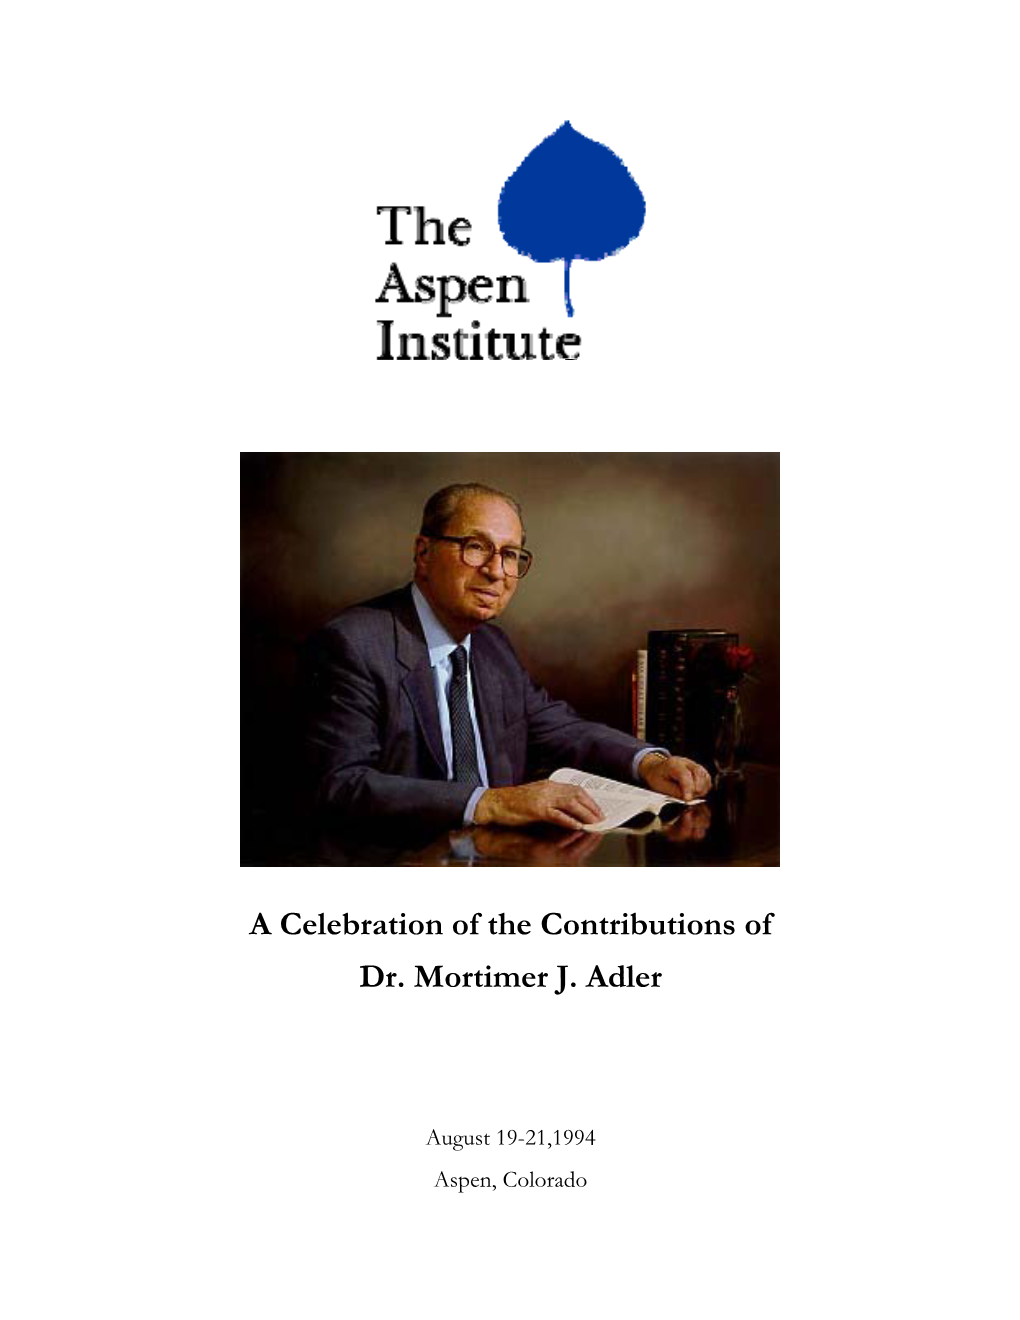 A Celebration of the Contributions of Dr. Mortimer J. Adler